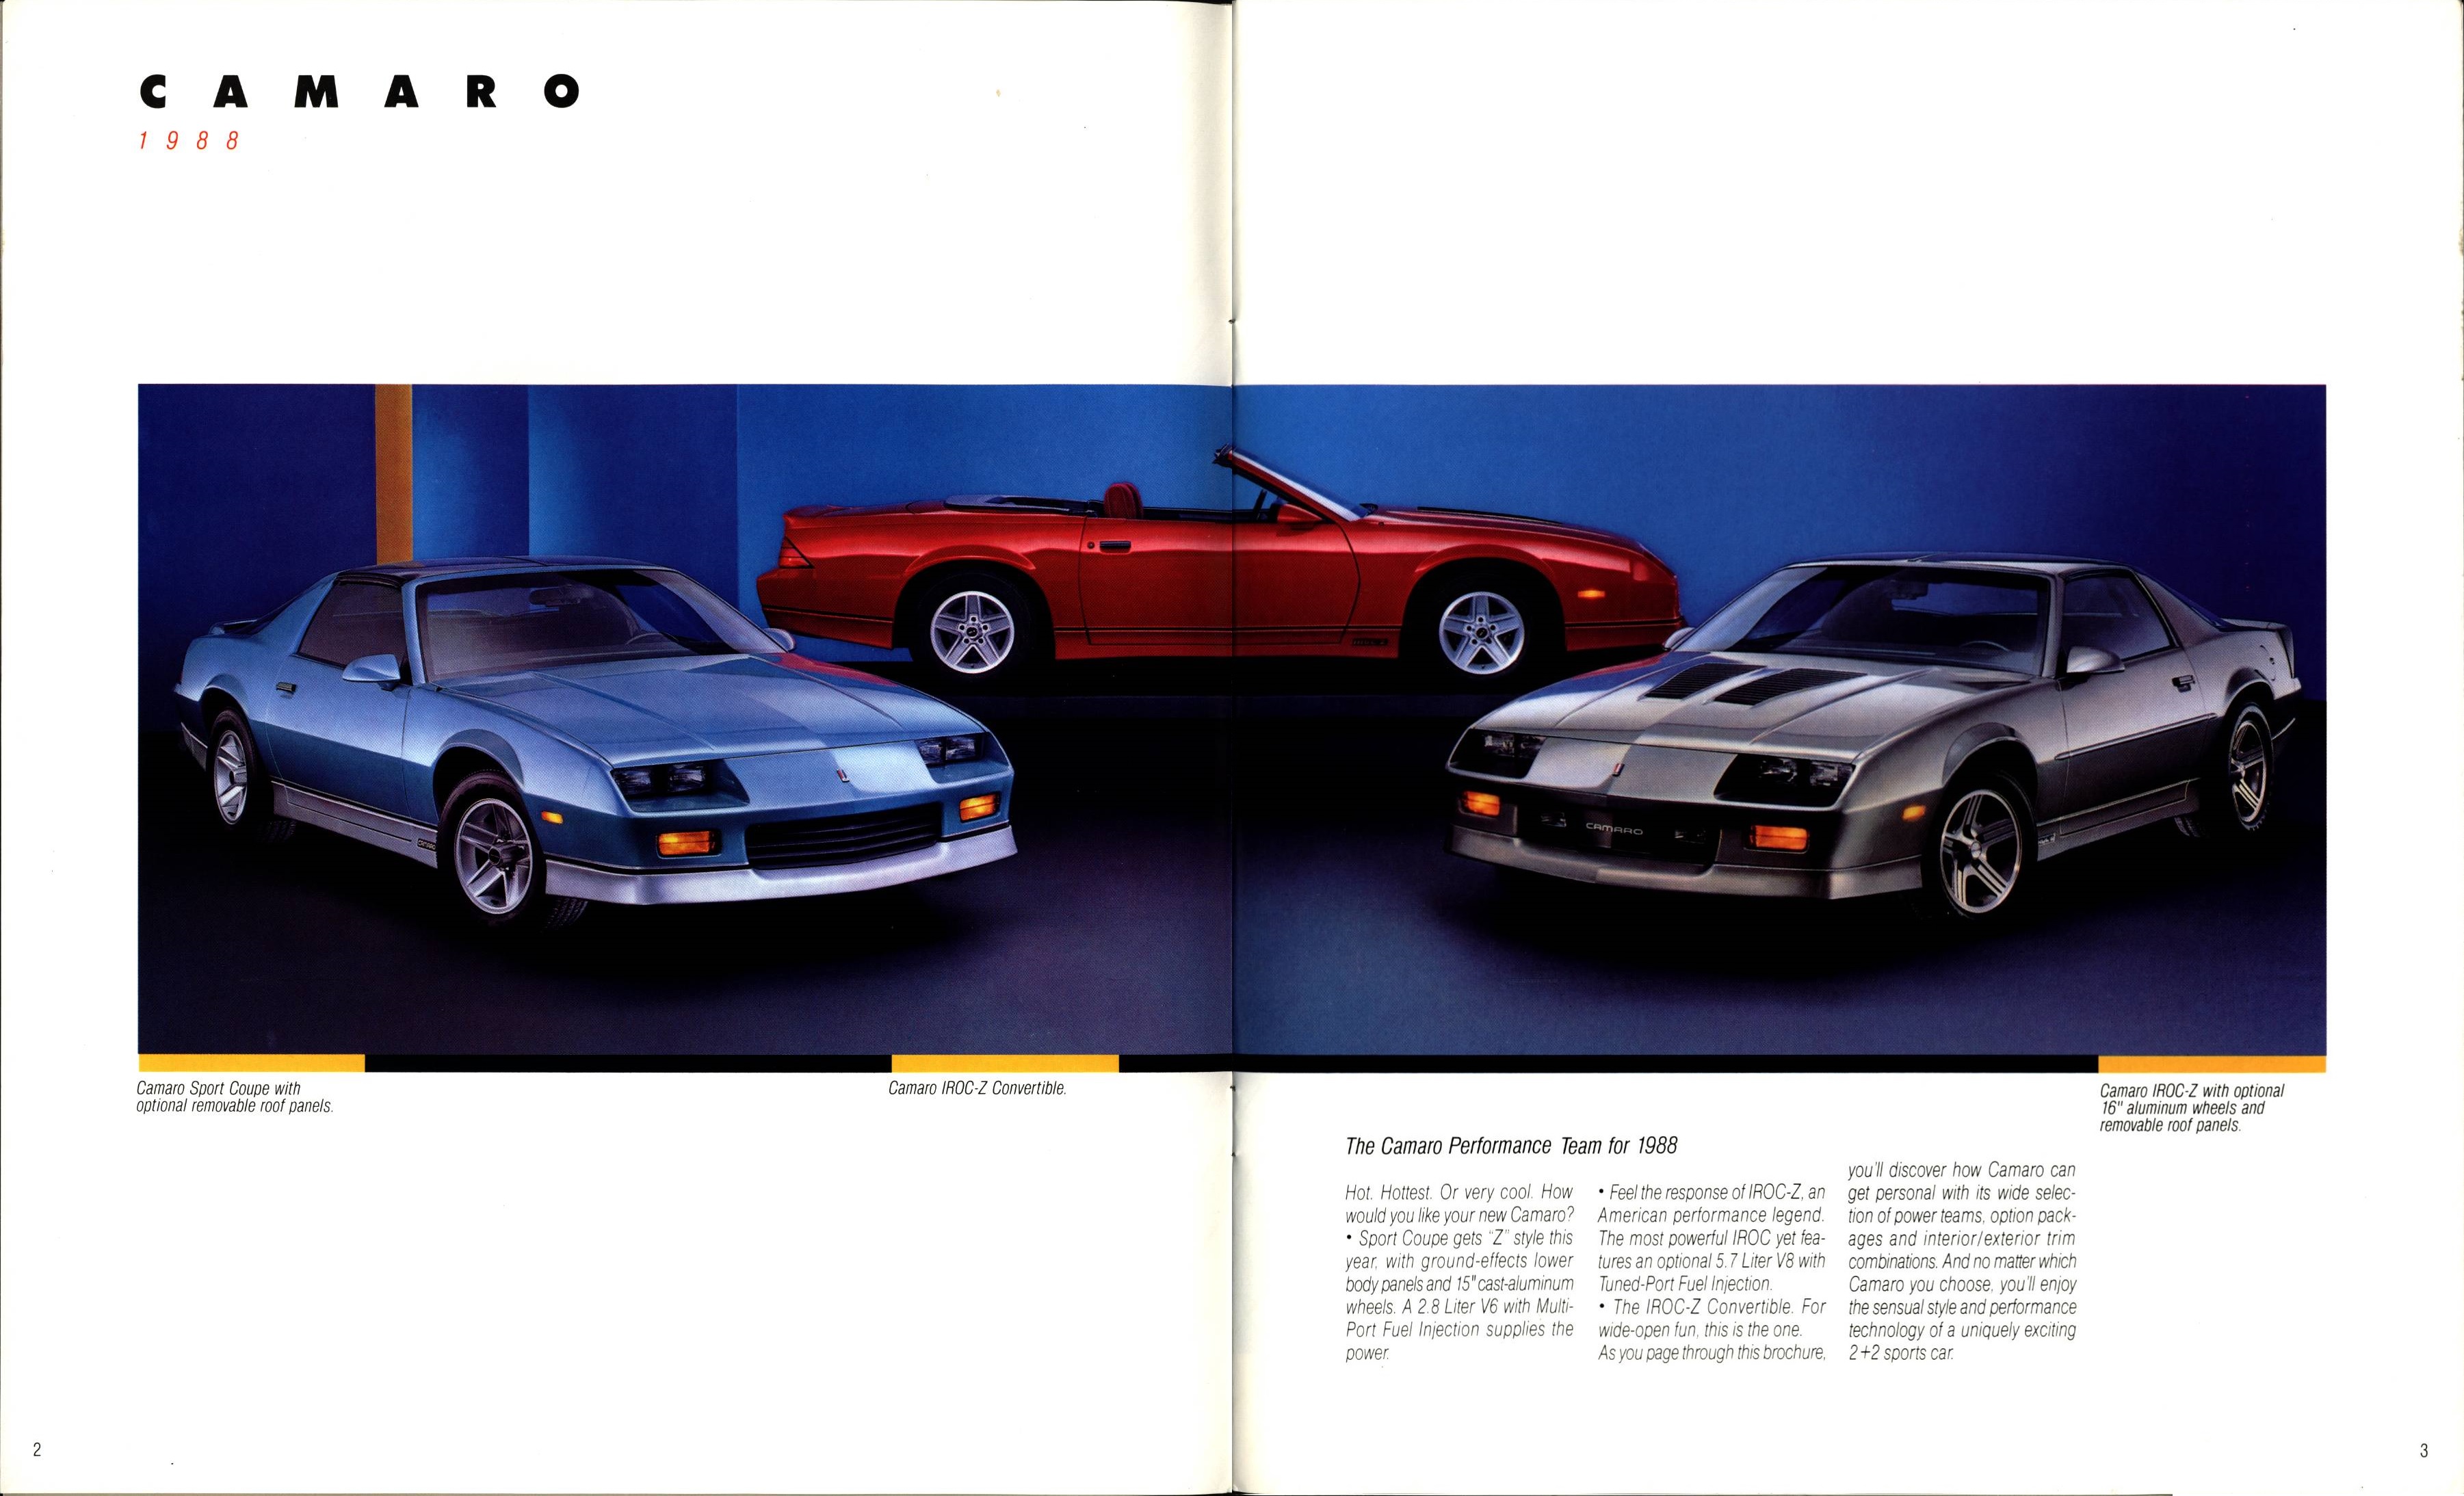 1988 Chevrolet Camaro Brochure 02-03